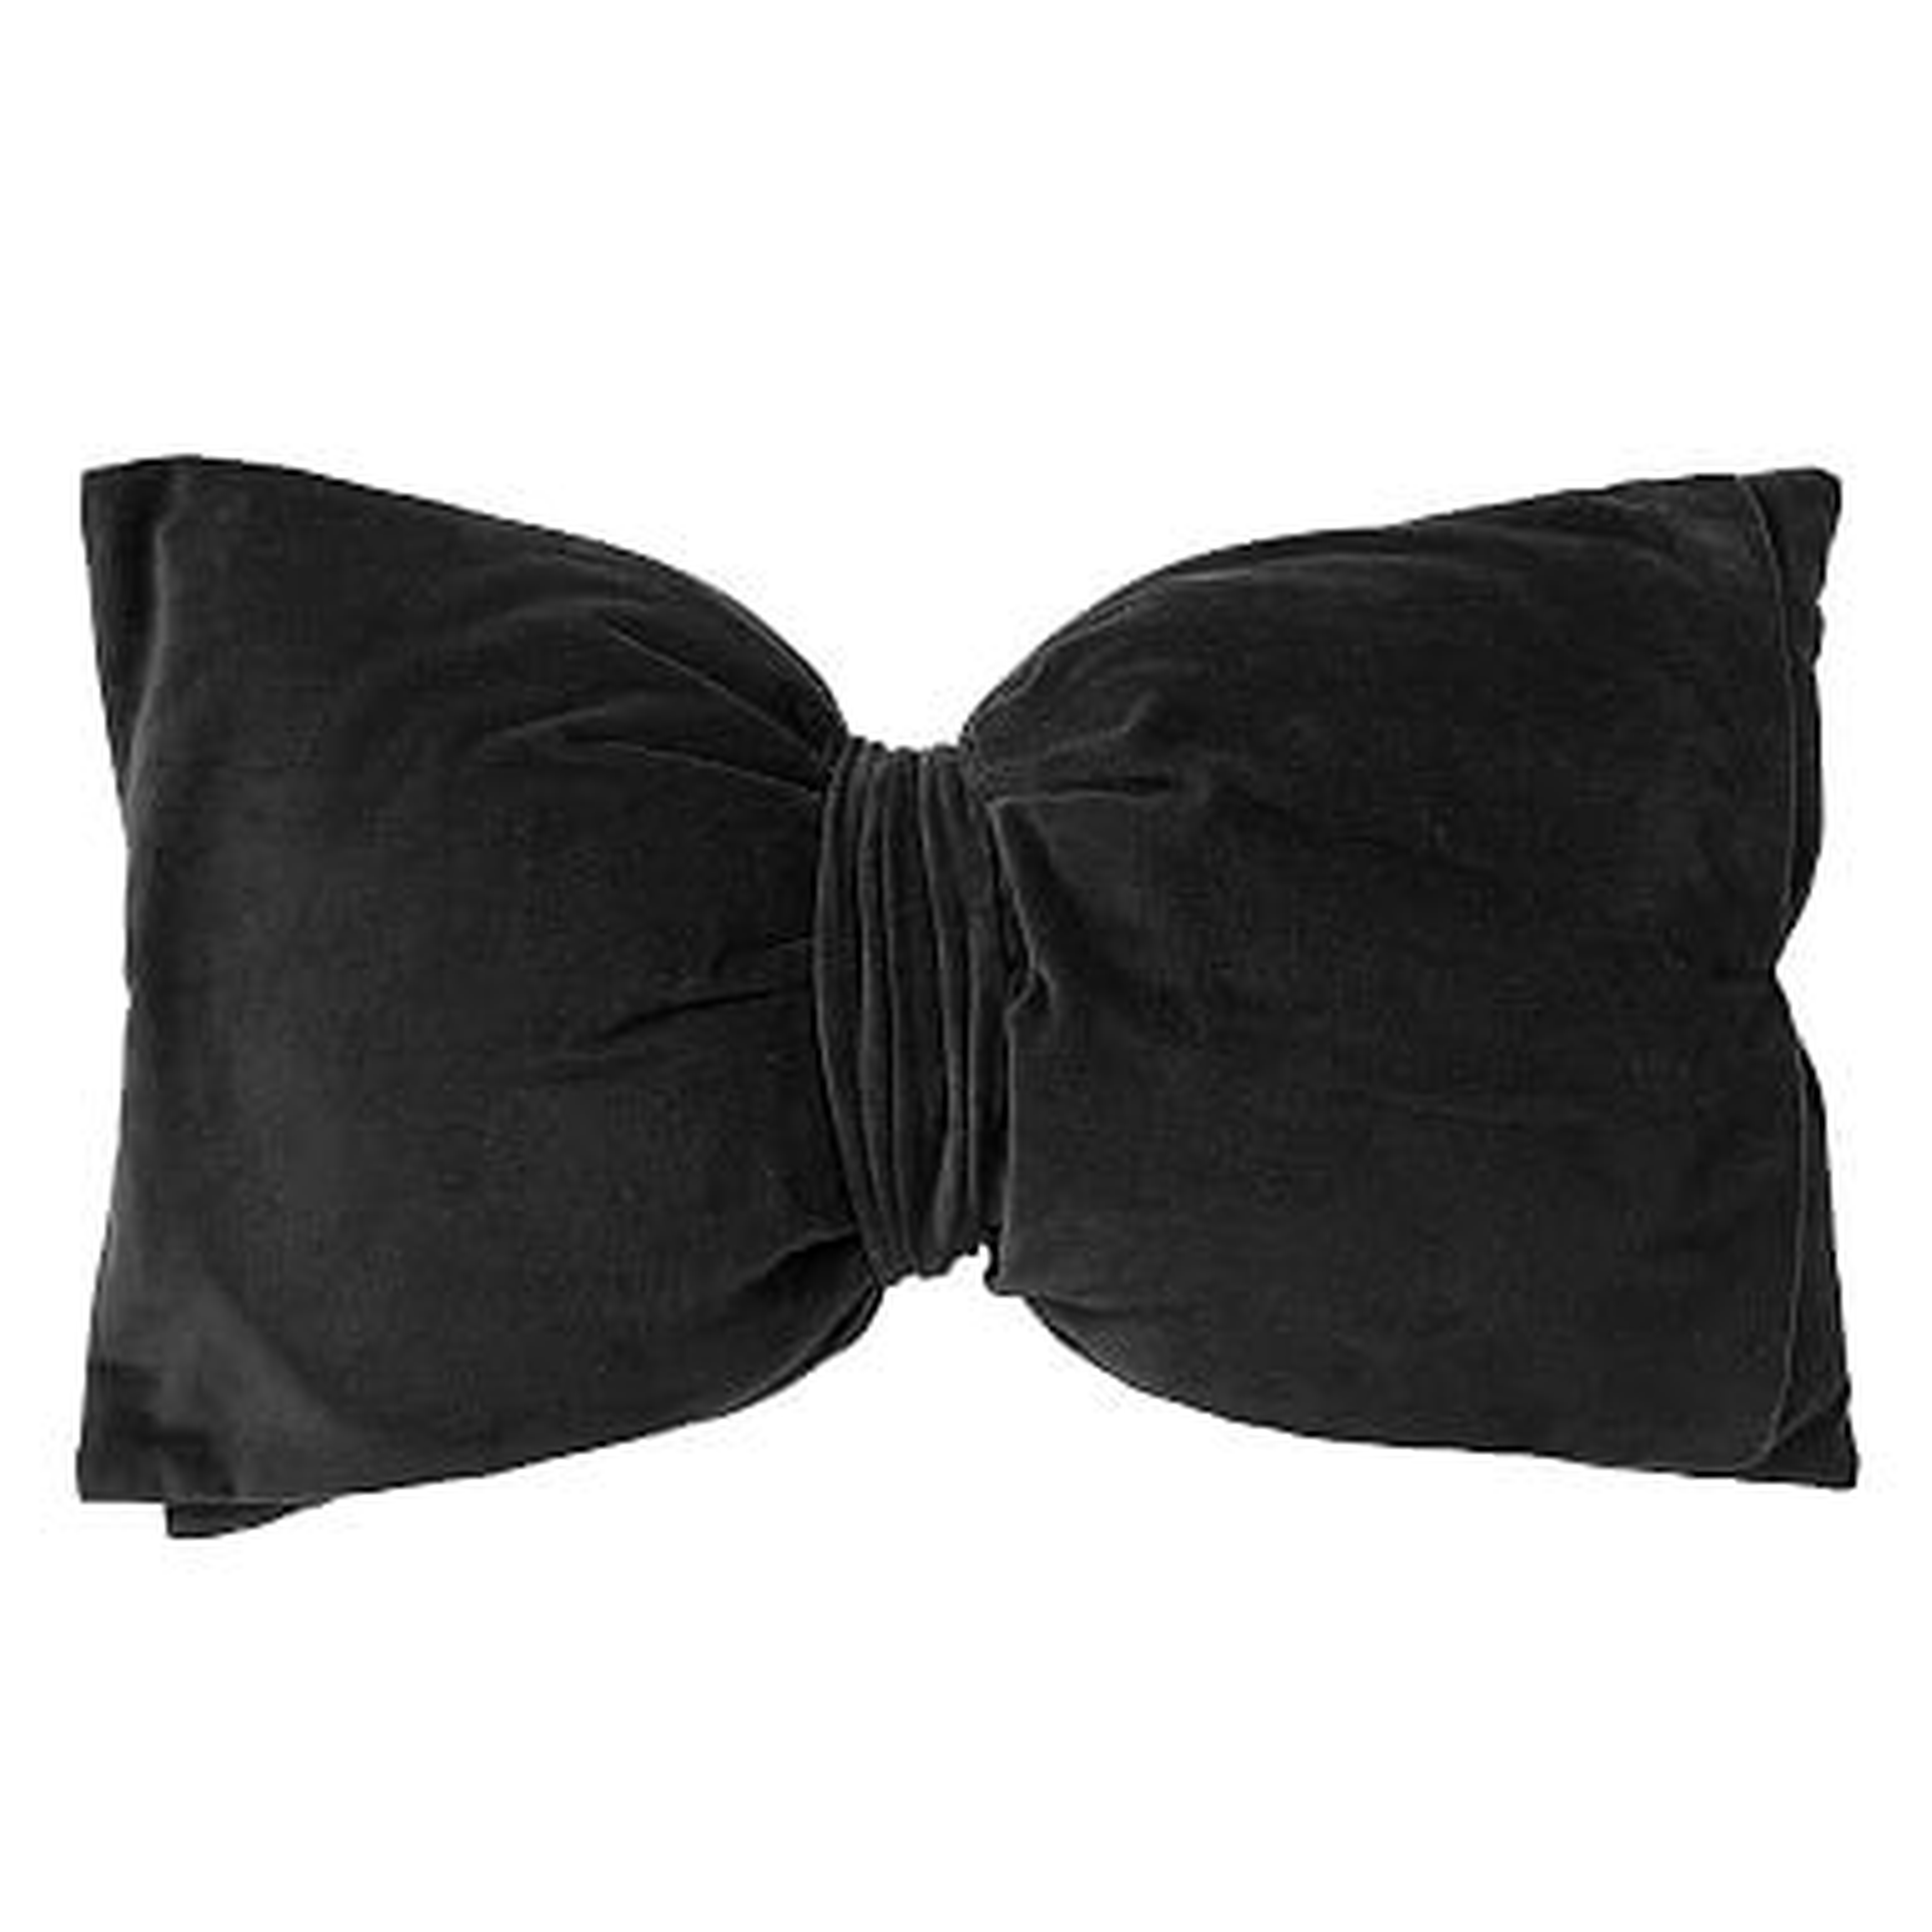 The Emily & Meritt Velvet Bow Pillow, Black, 18" x 10.5" - Pottery Barn Teen